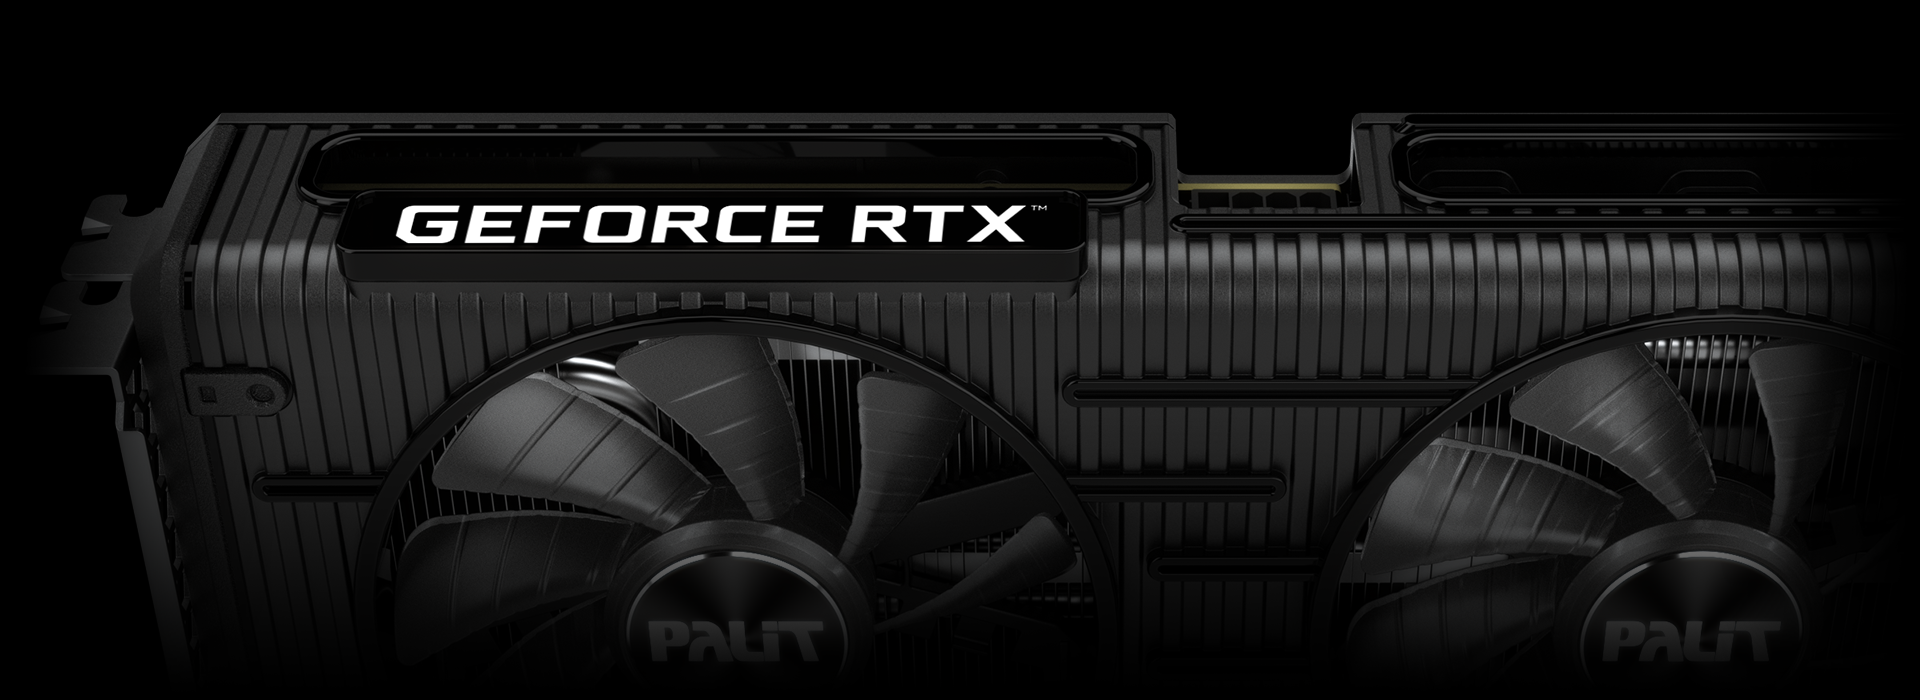 製品保証付き RTX GeForce Palit 3060 12GB OC Dual PCパーツ